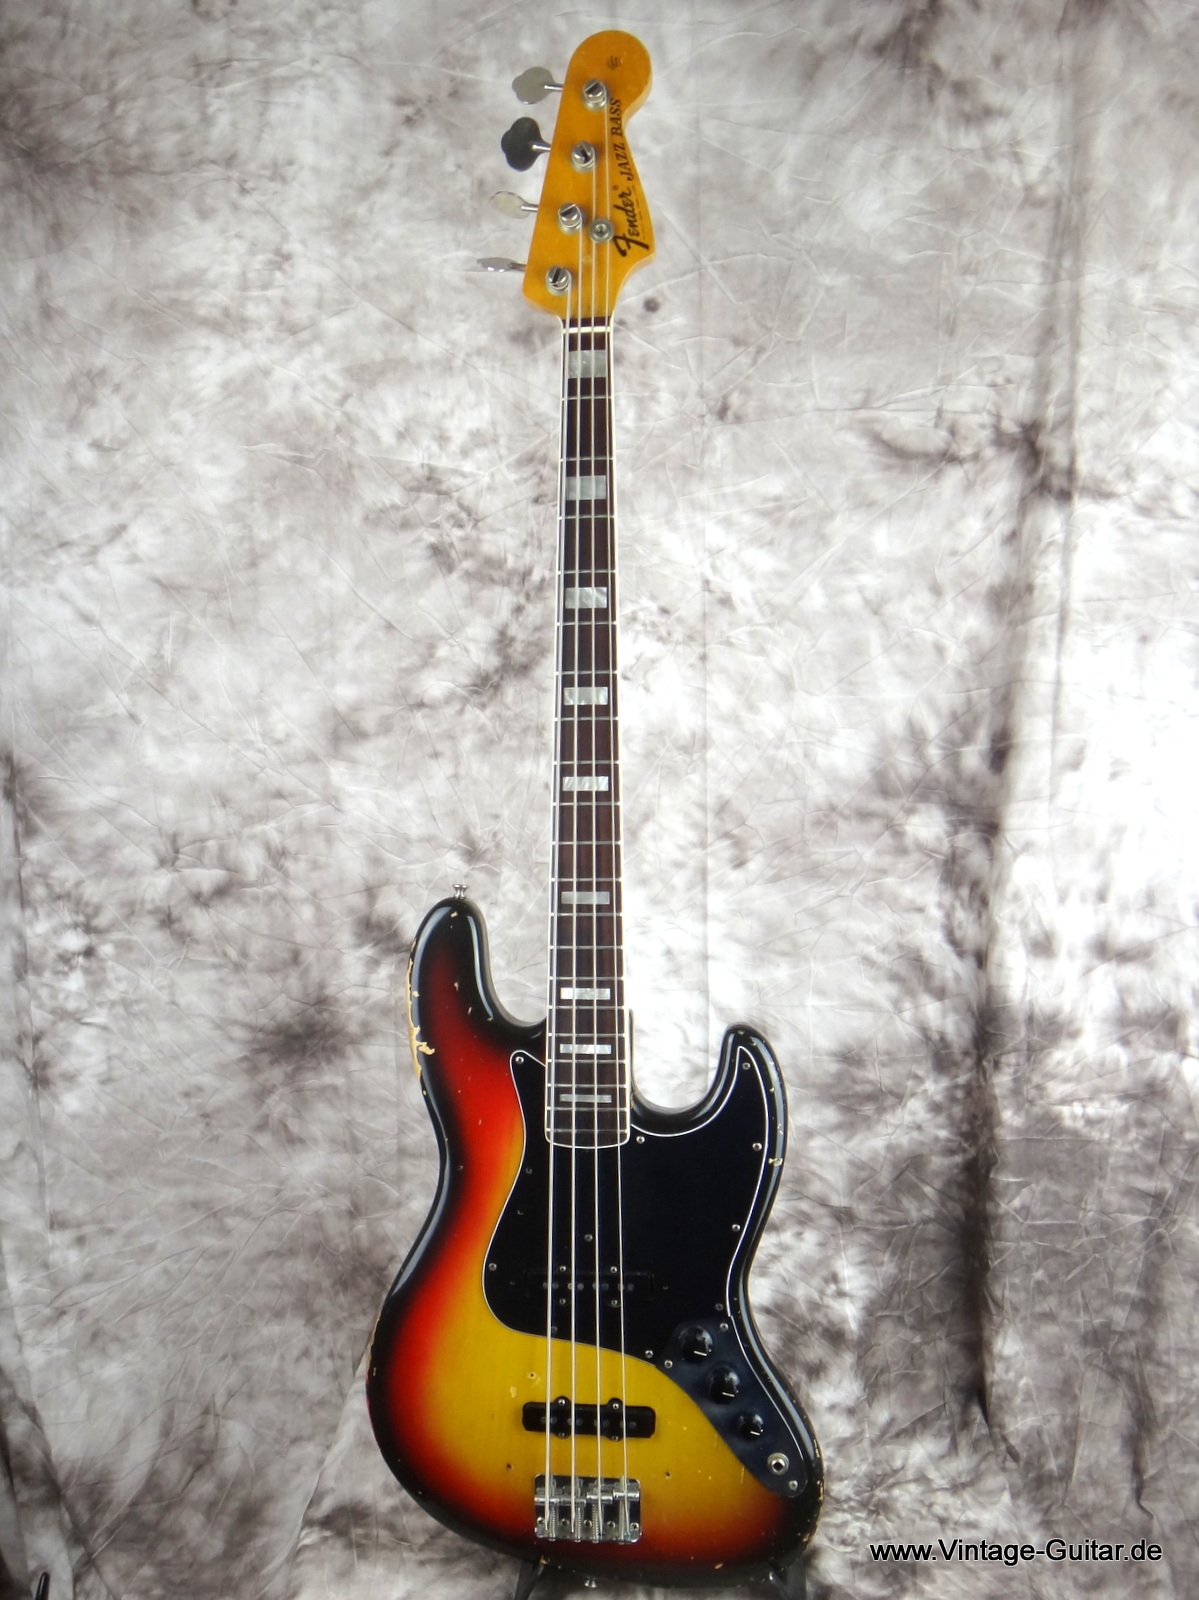 Fender_Jazz-Bass_1974_sunburst-alder-body-001.JPG